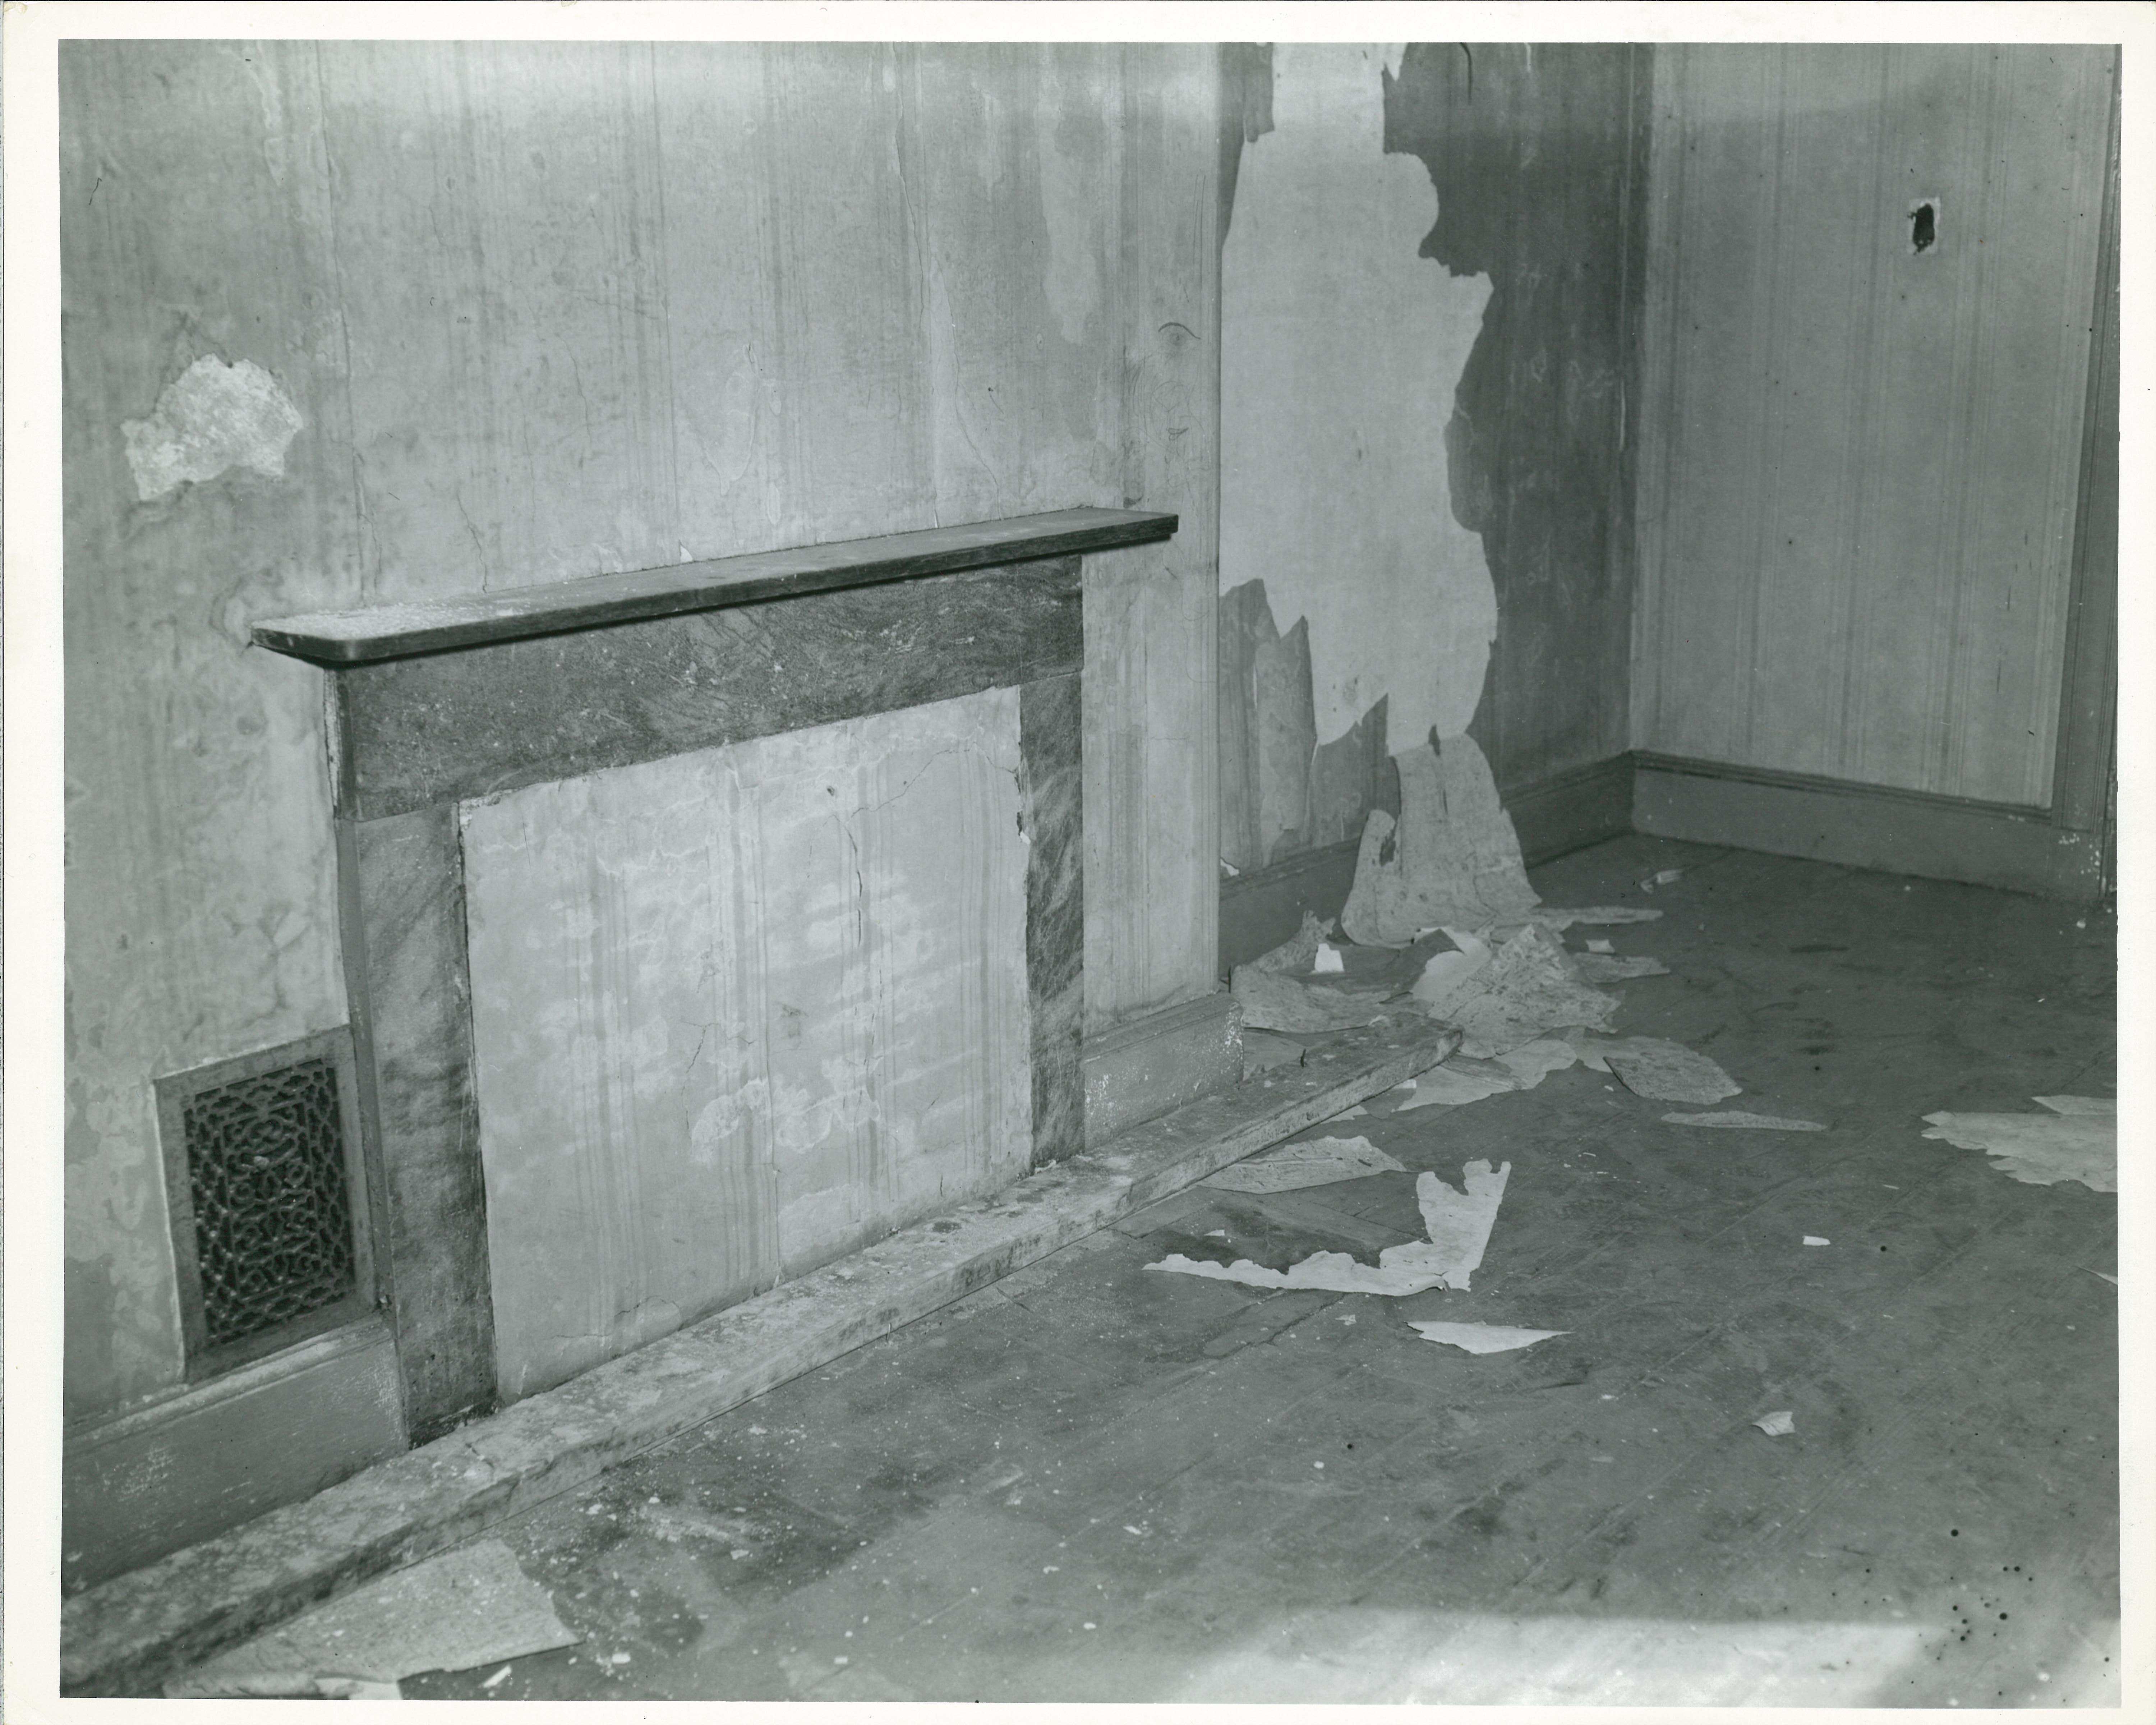 306 S 2nd Street - Pre-restoration fireplace